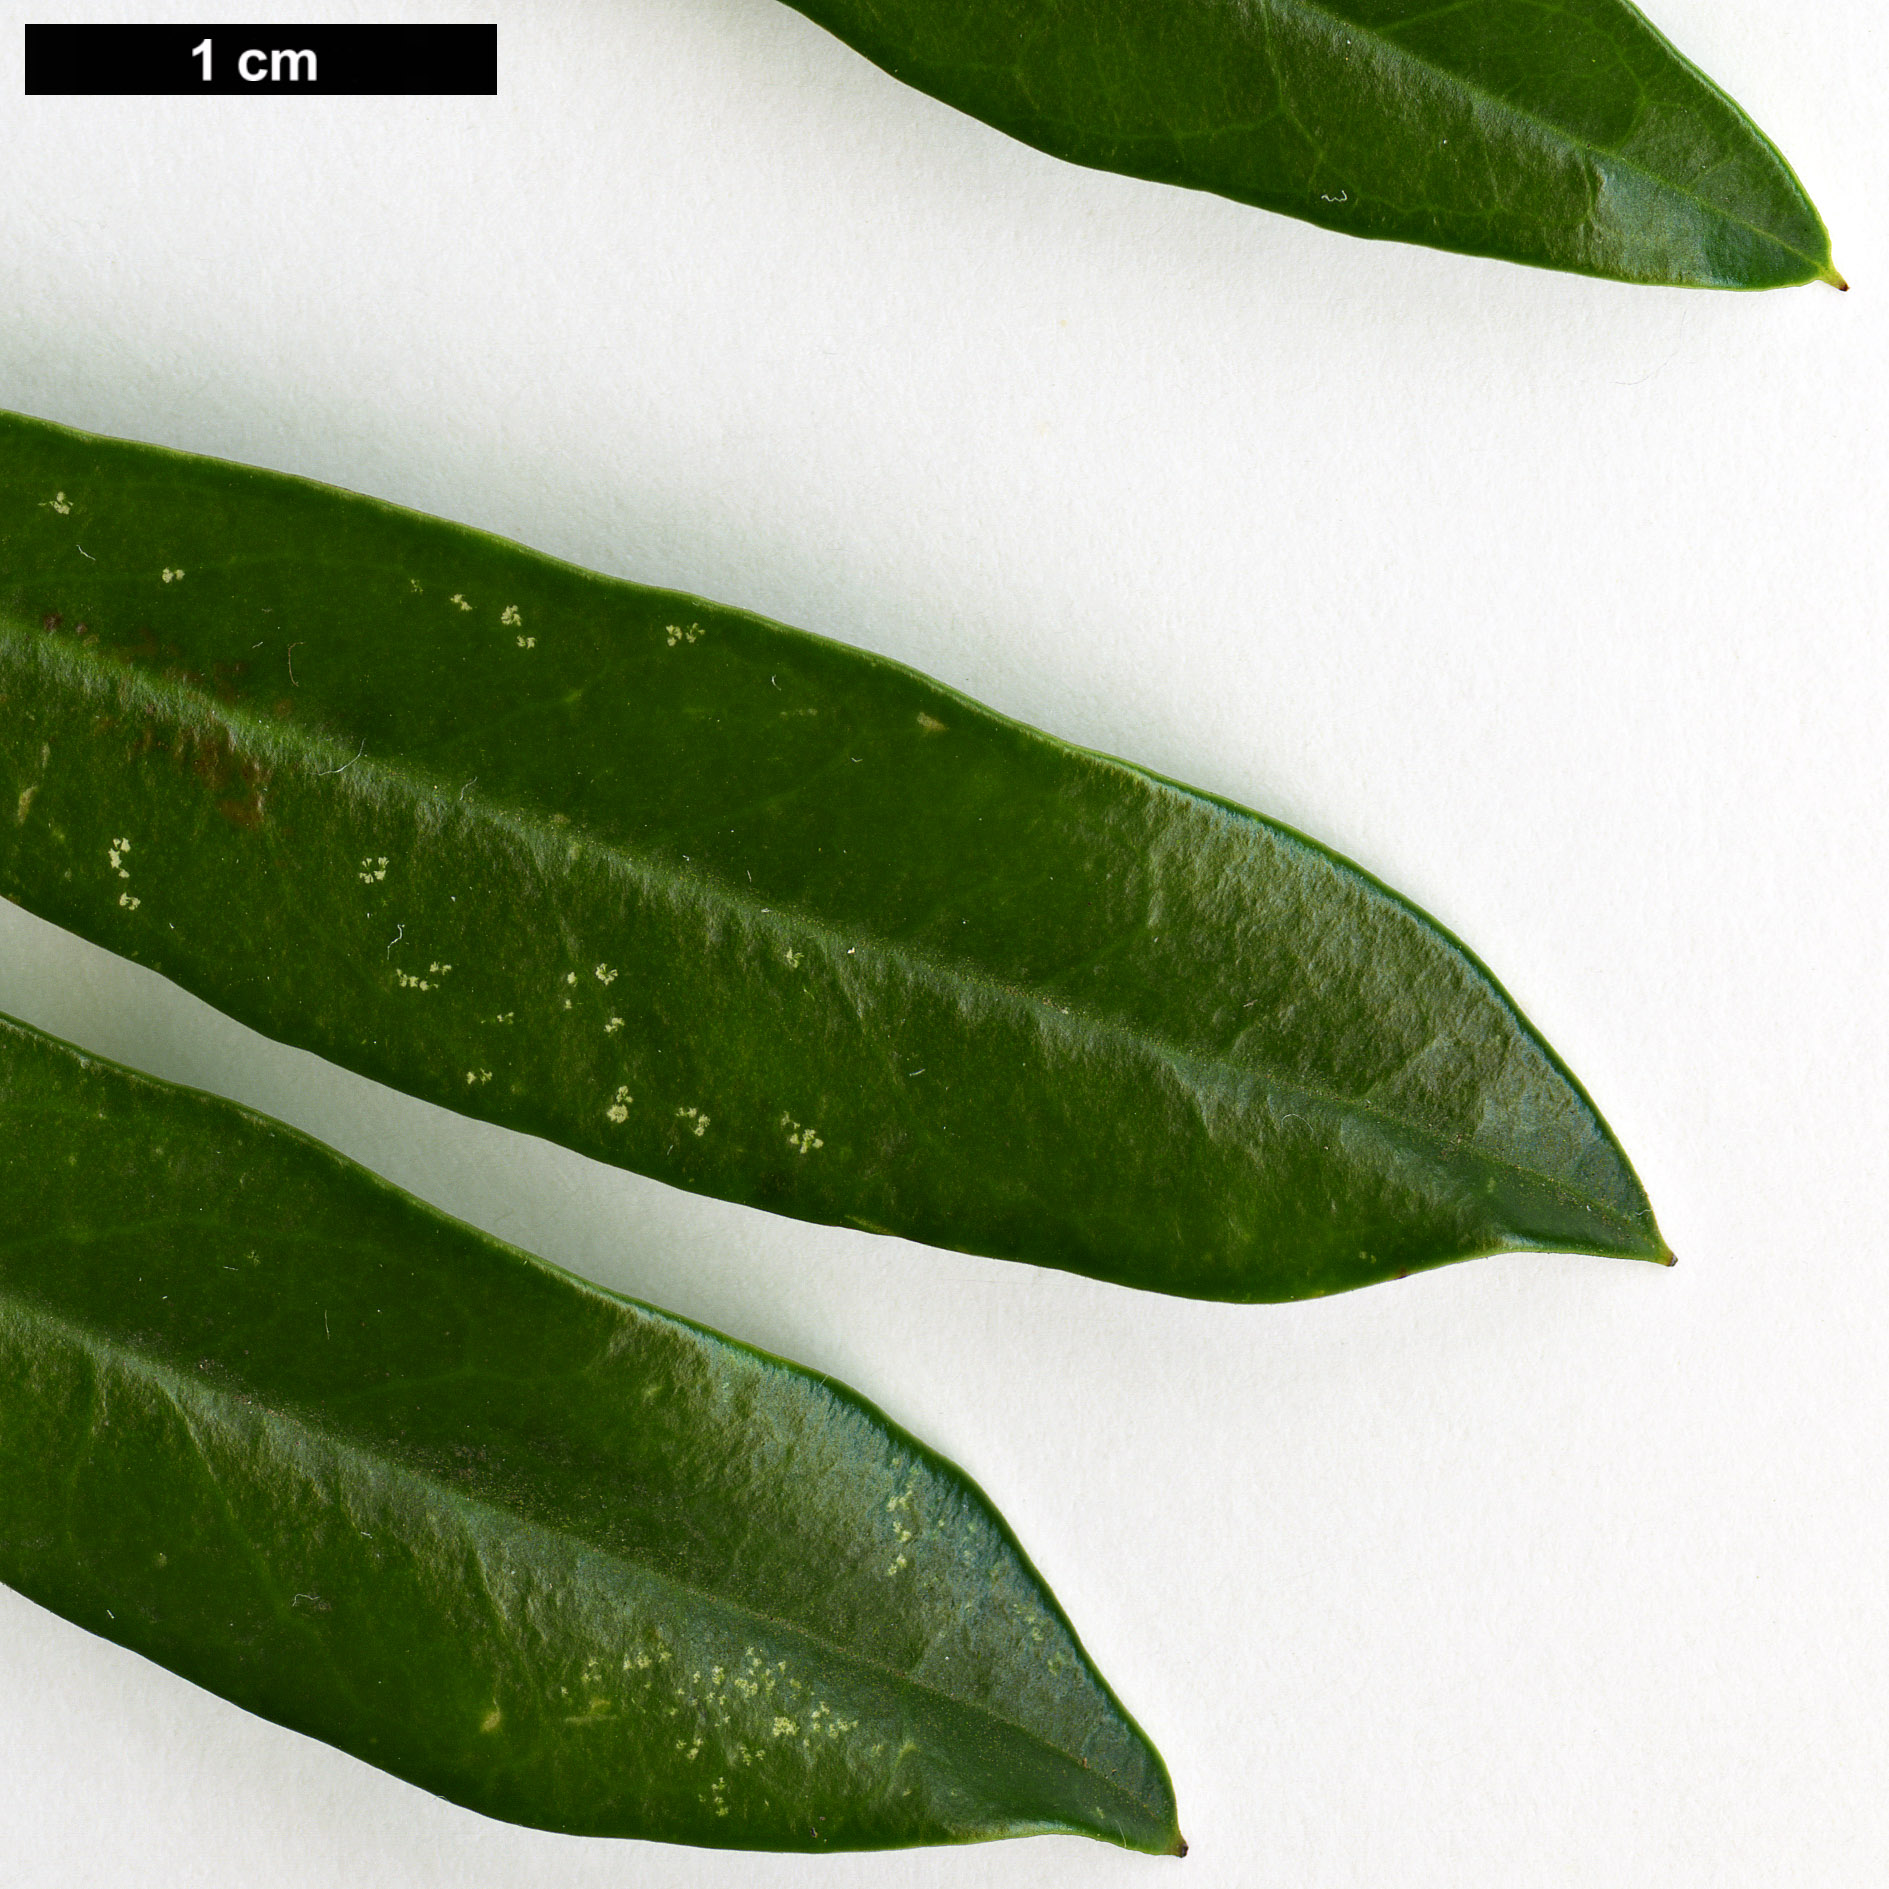 High resolution image: Family: Aquifoliaceae - Genus: Ilex - Taxon: cassine - SpeciesSub: var. angustifolia